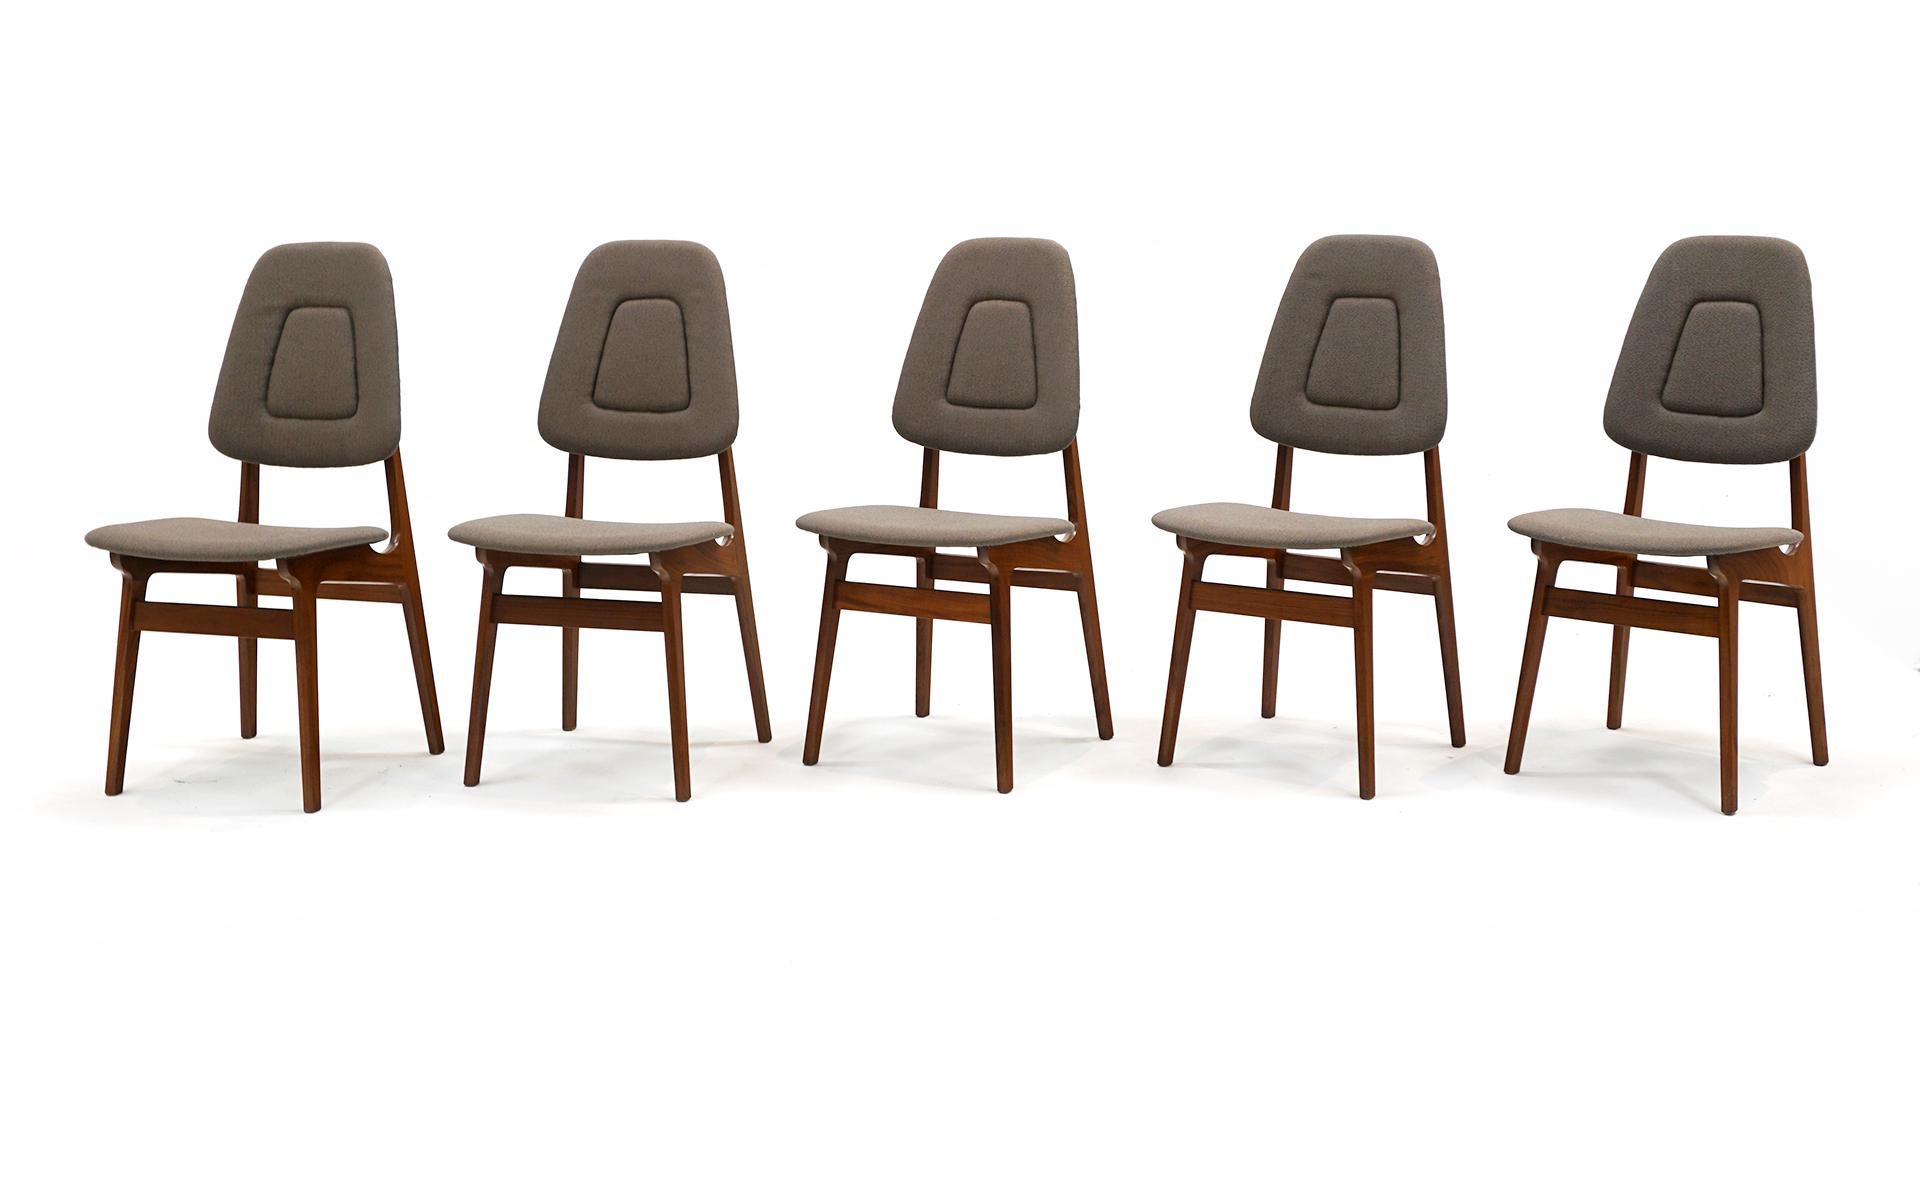 Ensemble de 10 chaises de salle à manger sans accoudoirs conçu par Adrian Pearsall pour Craft Associates.  Cadres en noyer.  Remeublé de façon experte dans un tissu gris moyen / gris.  Sur l'avant-dernière photo, vous pouvez voir une petite tache